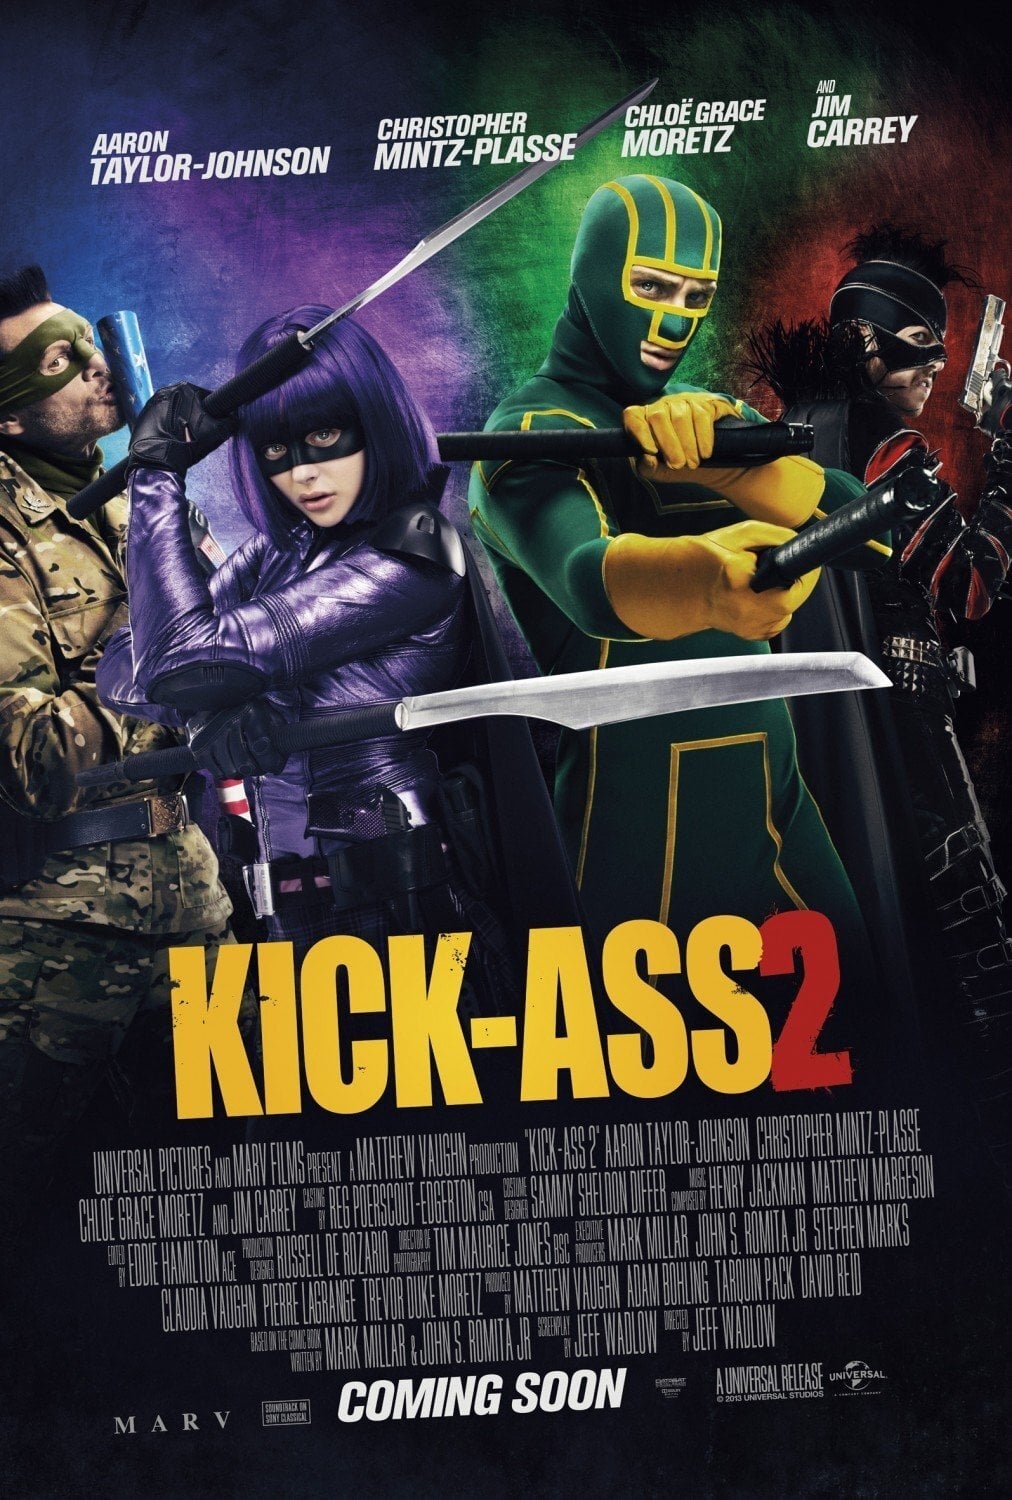 EN - Kick-Ass 2 (2013) JIM CARREY